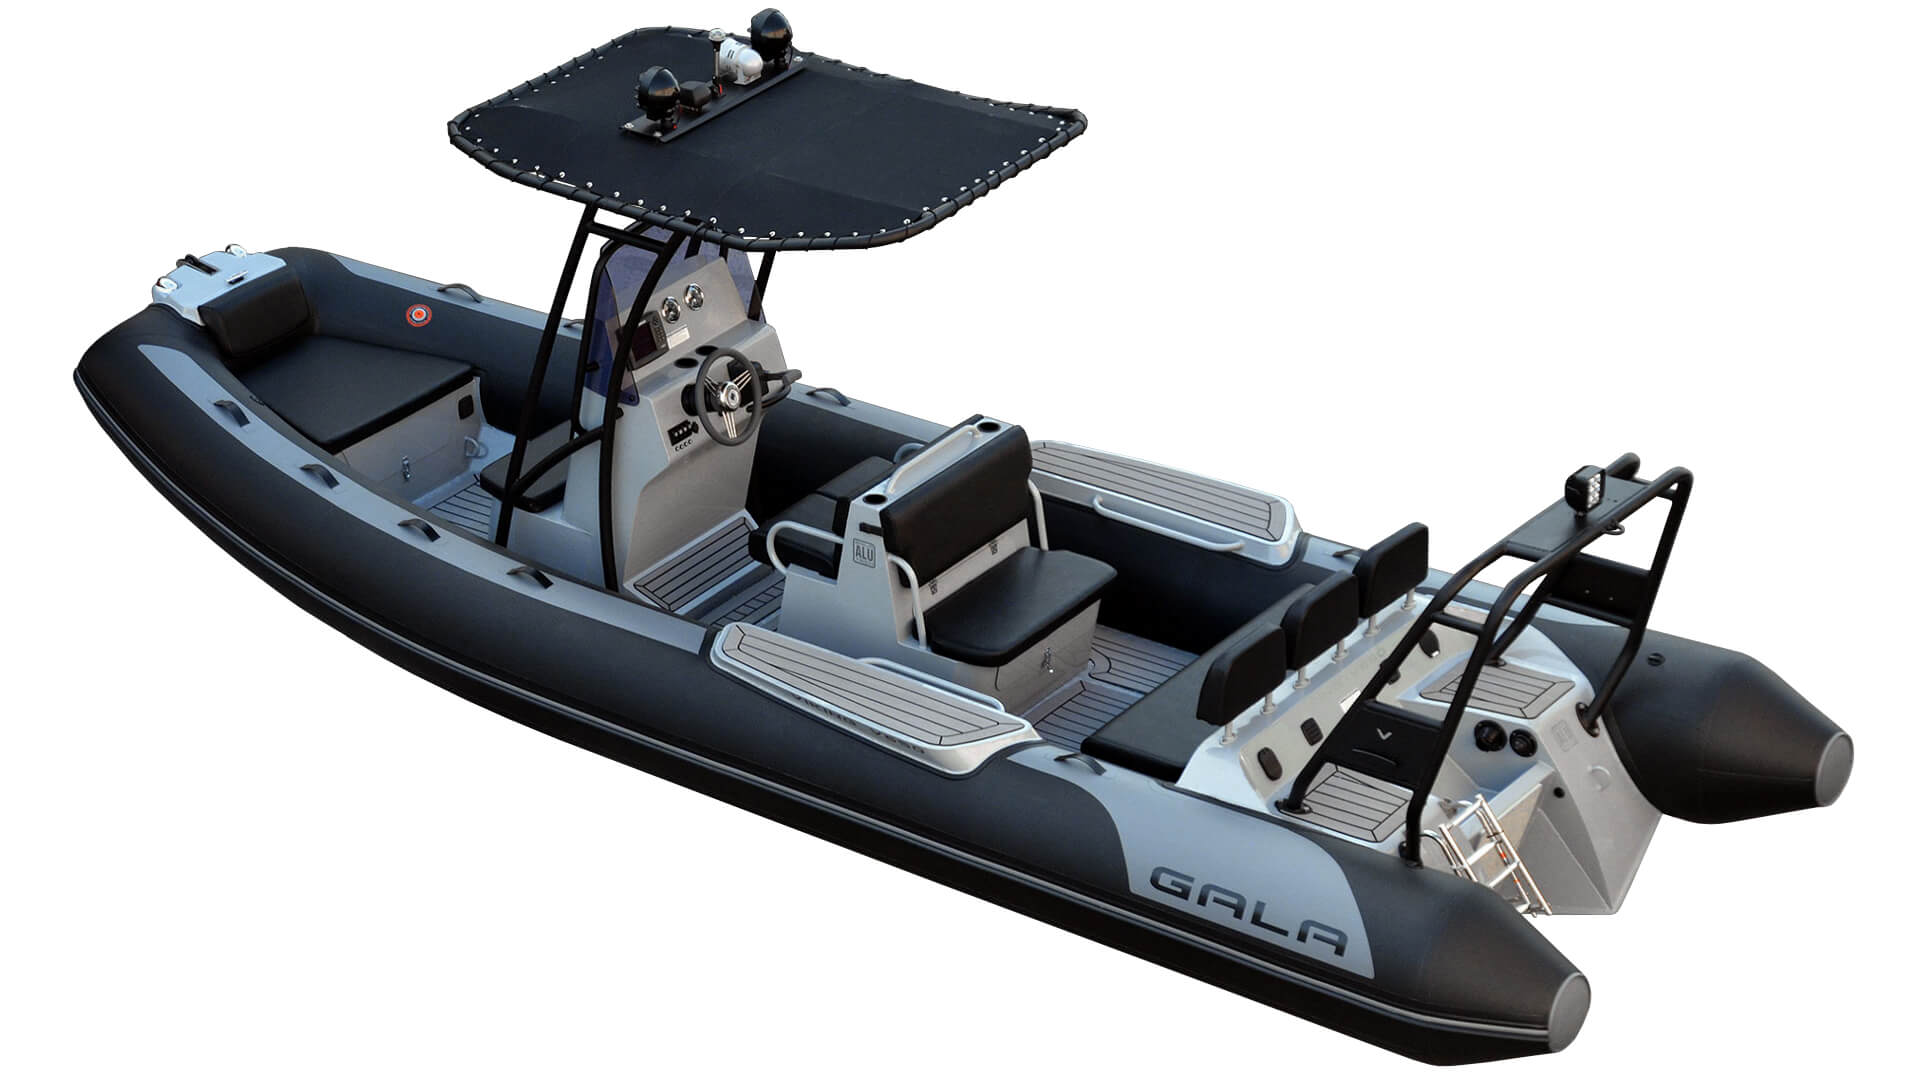 Надувная лодка с жестким алюминиевым дном GALA Viking V650, Надувная лодка с жестким дном GALA Viking V650, Надувная лодка с жестким дном GALA V650, Надувная лодка GALA V650, Надувная лодка GALA V650, GALA V650, лодка с жестким дном, алюминиевый риб, алюминиевый RIB, RIB